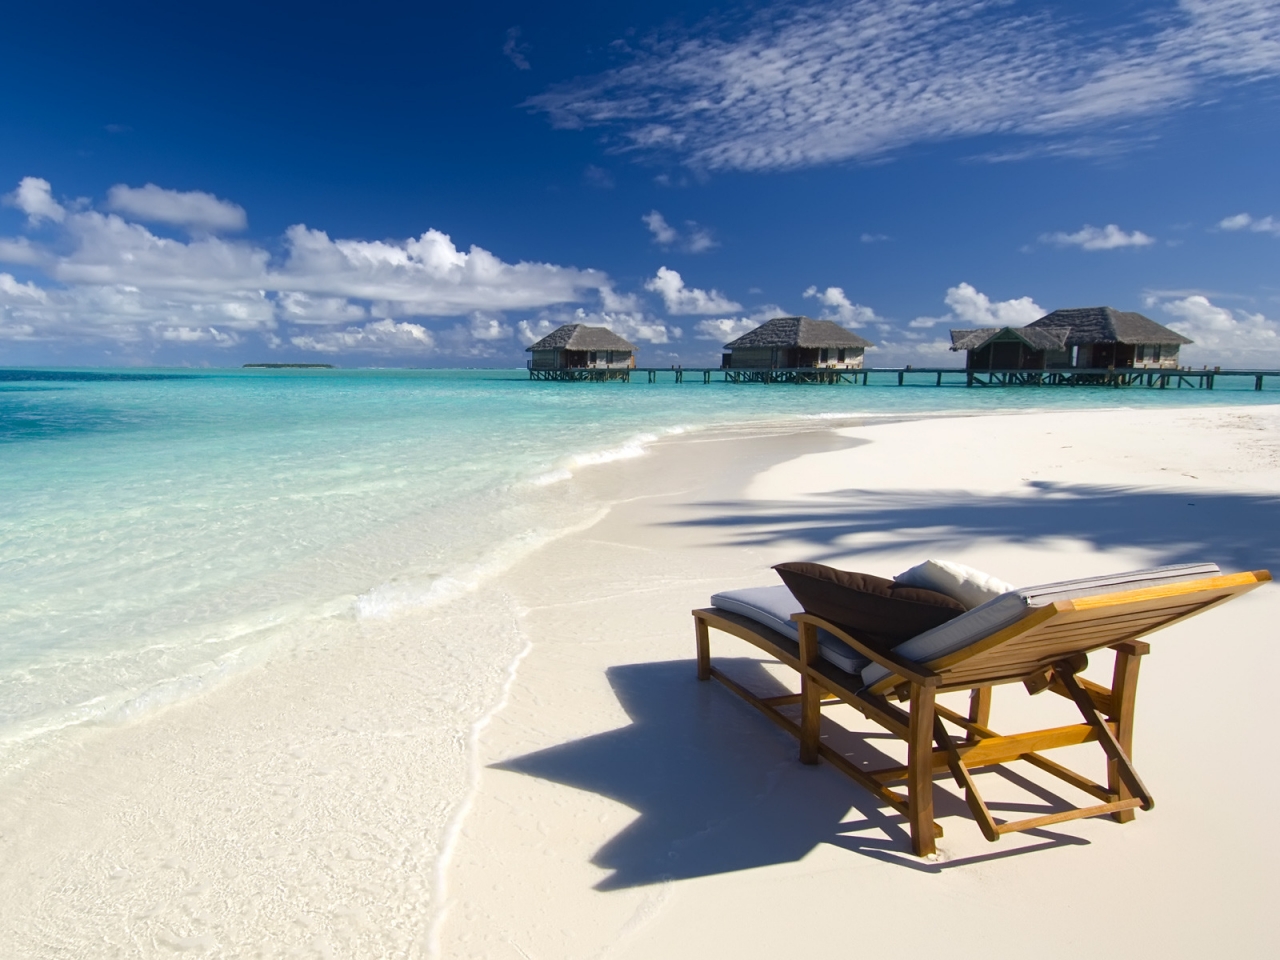 Maldives Conrad Beach for 1280 x 960 resolution